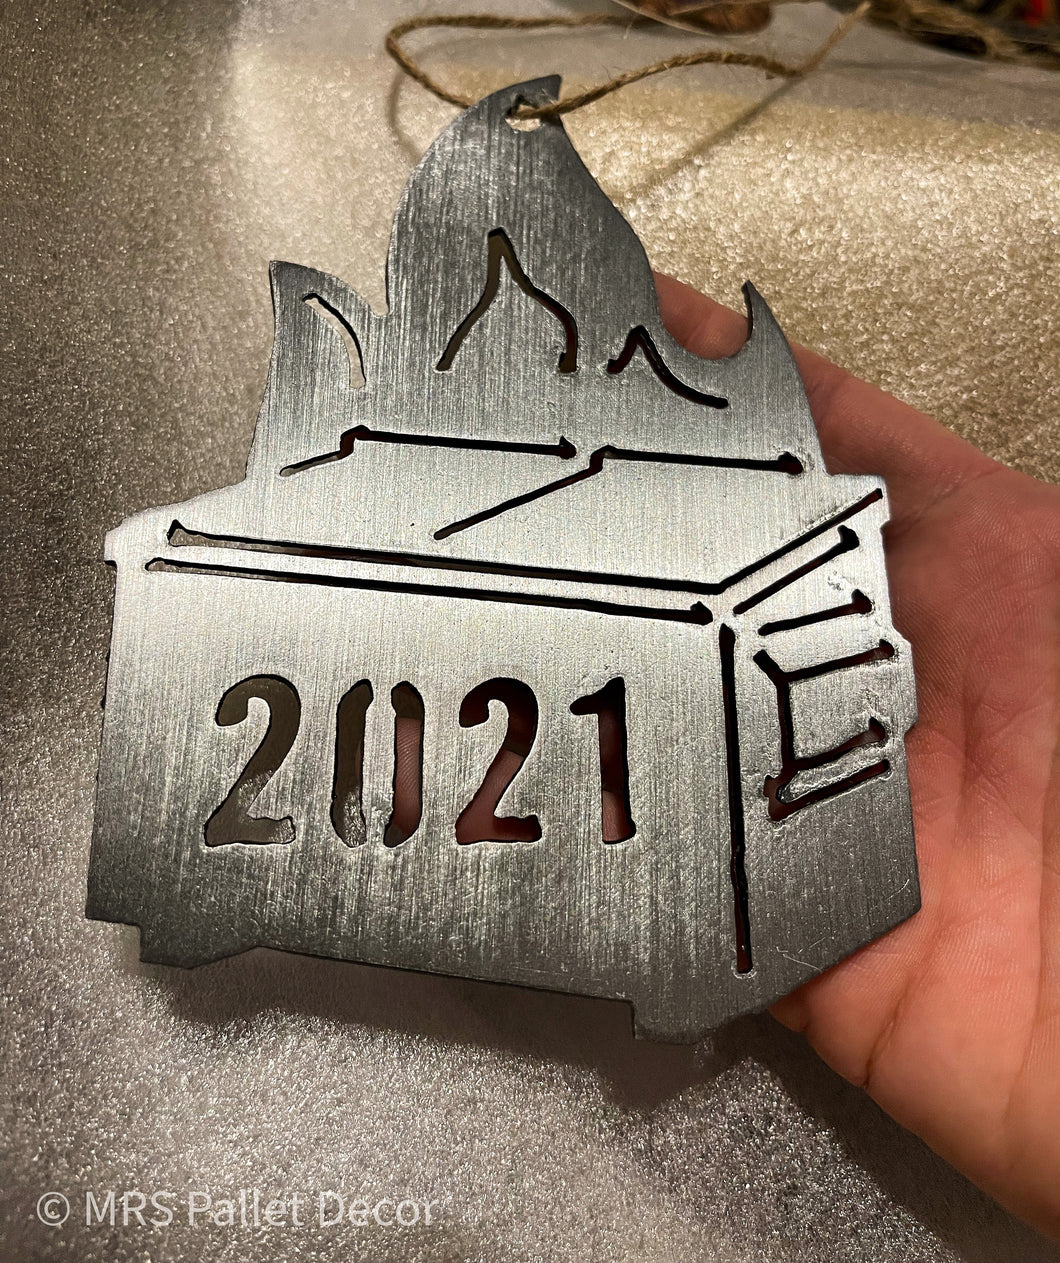 2021 Dumpster Fire Ornament